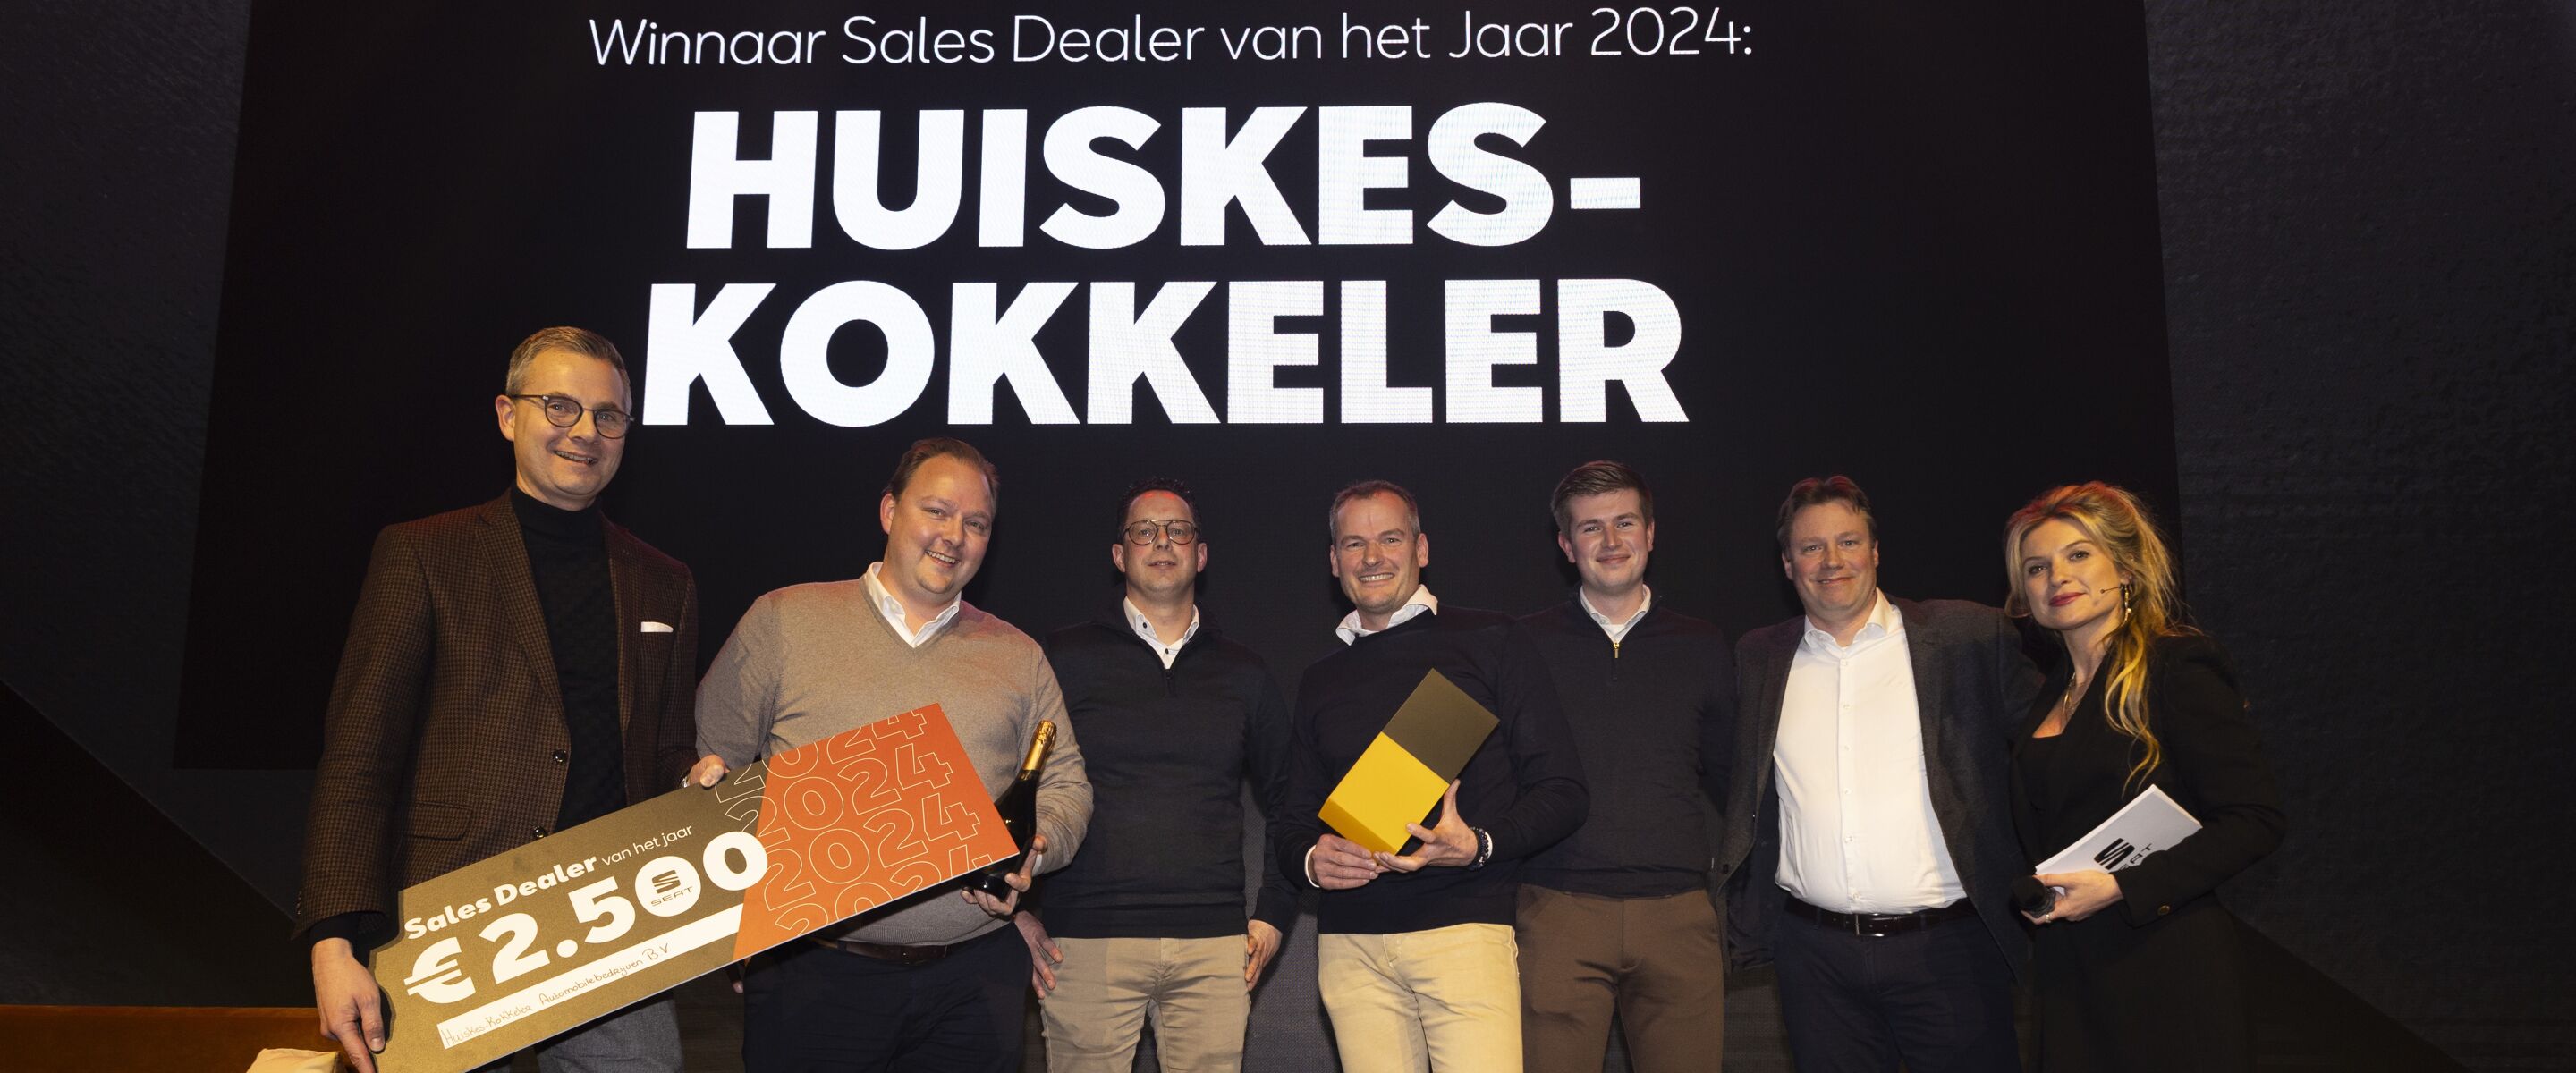 Huiskes-Kokkeler is uitgeroepen tot ‘SEAT Sales Dealer van het Jaar 2024’